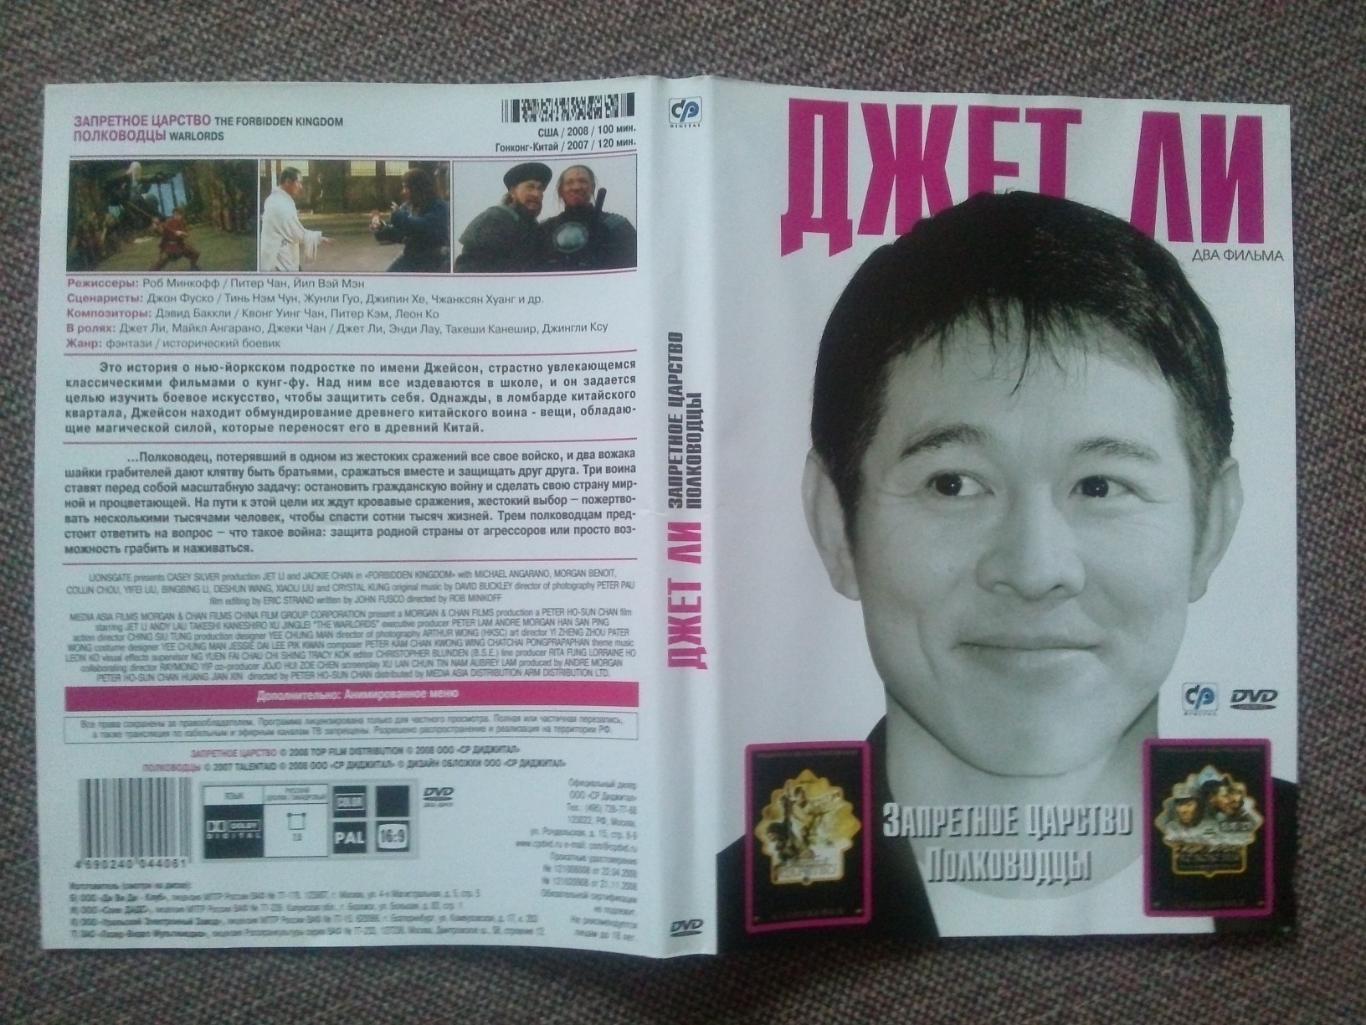 DVD диск : фильмы Джета Ли (Джет Ли) : Запретное царство и Полководцы 2